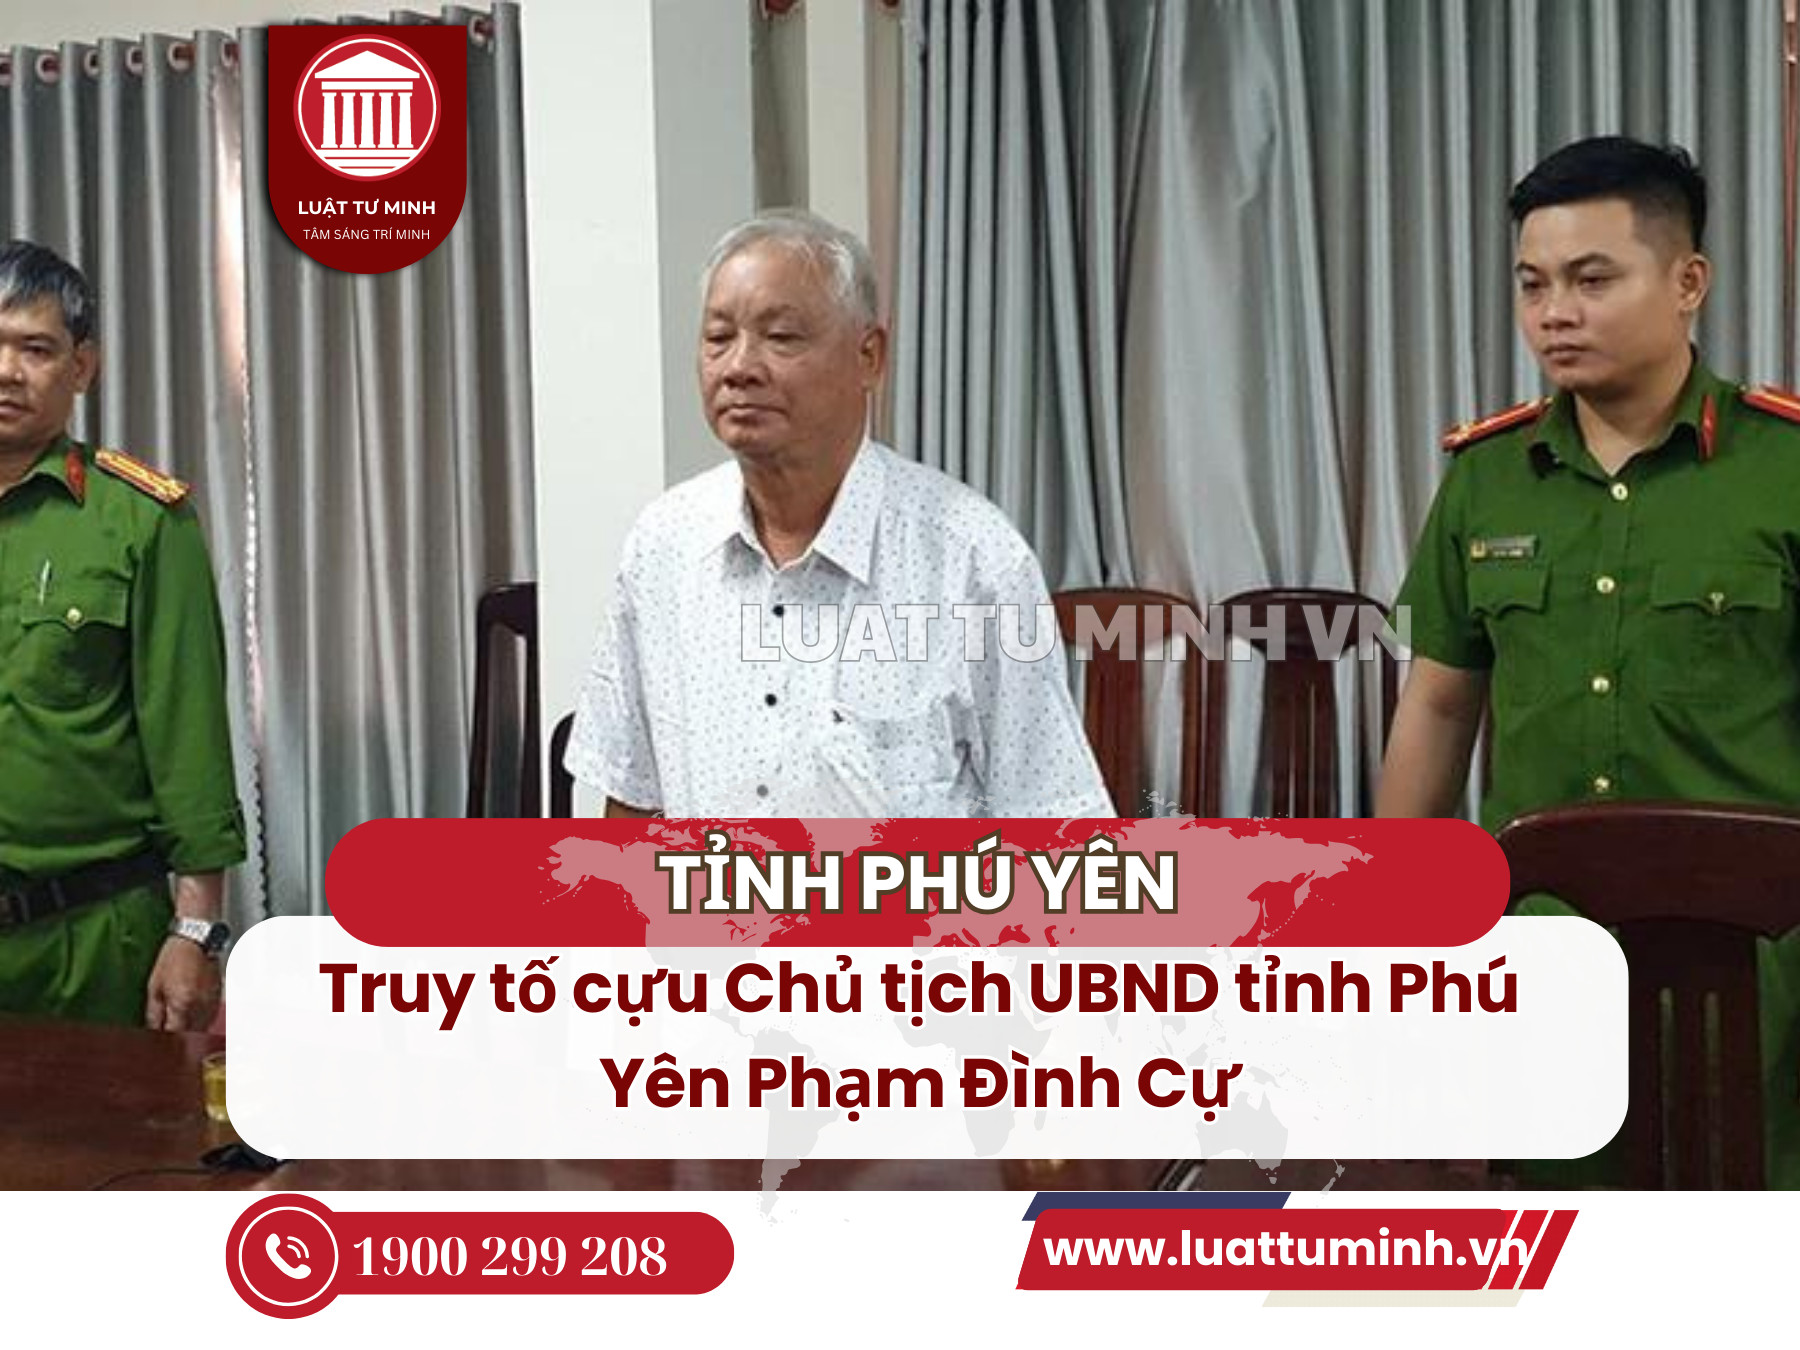 Truy tố cựu Chủ tịch UBND tỉnh Phú Yên Phạm Đình Cự - Luật Tư Minh